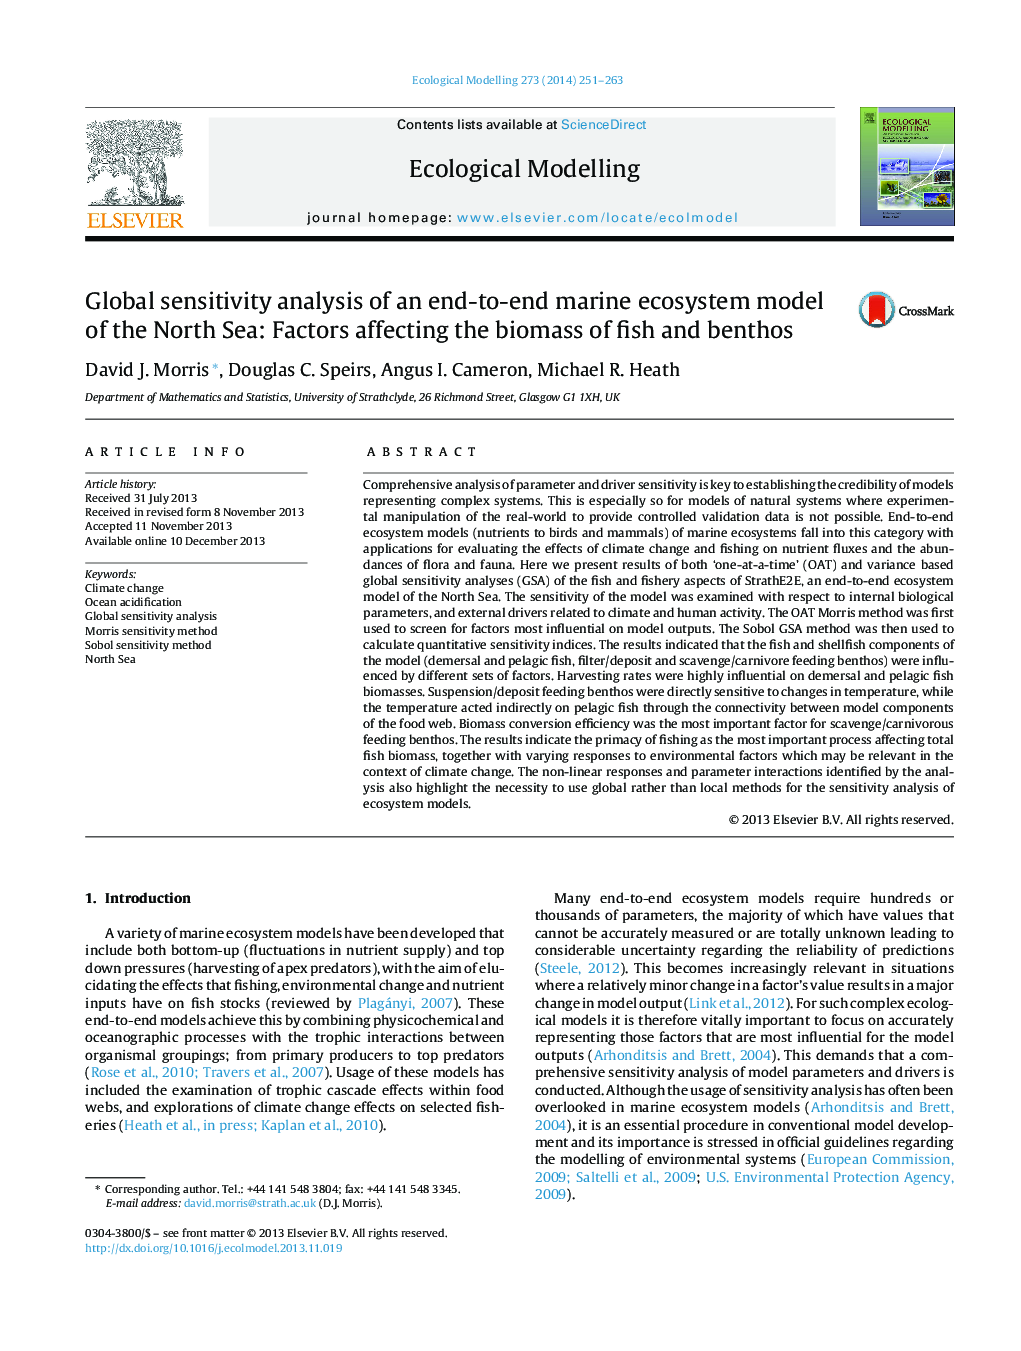 تجزیه و تحلیل حساسیت جهانی مدل پایه و پایانی سیستم اکوسیستم دریایی دریای شمال: عوامل موثر بر زیست توده ماهی و بتوز 